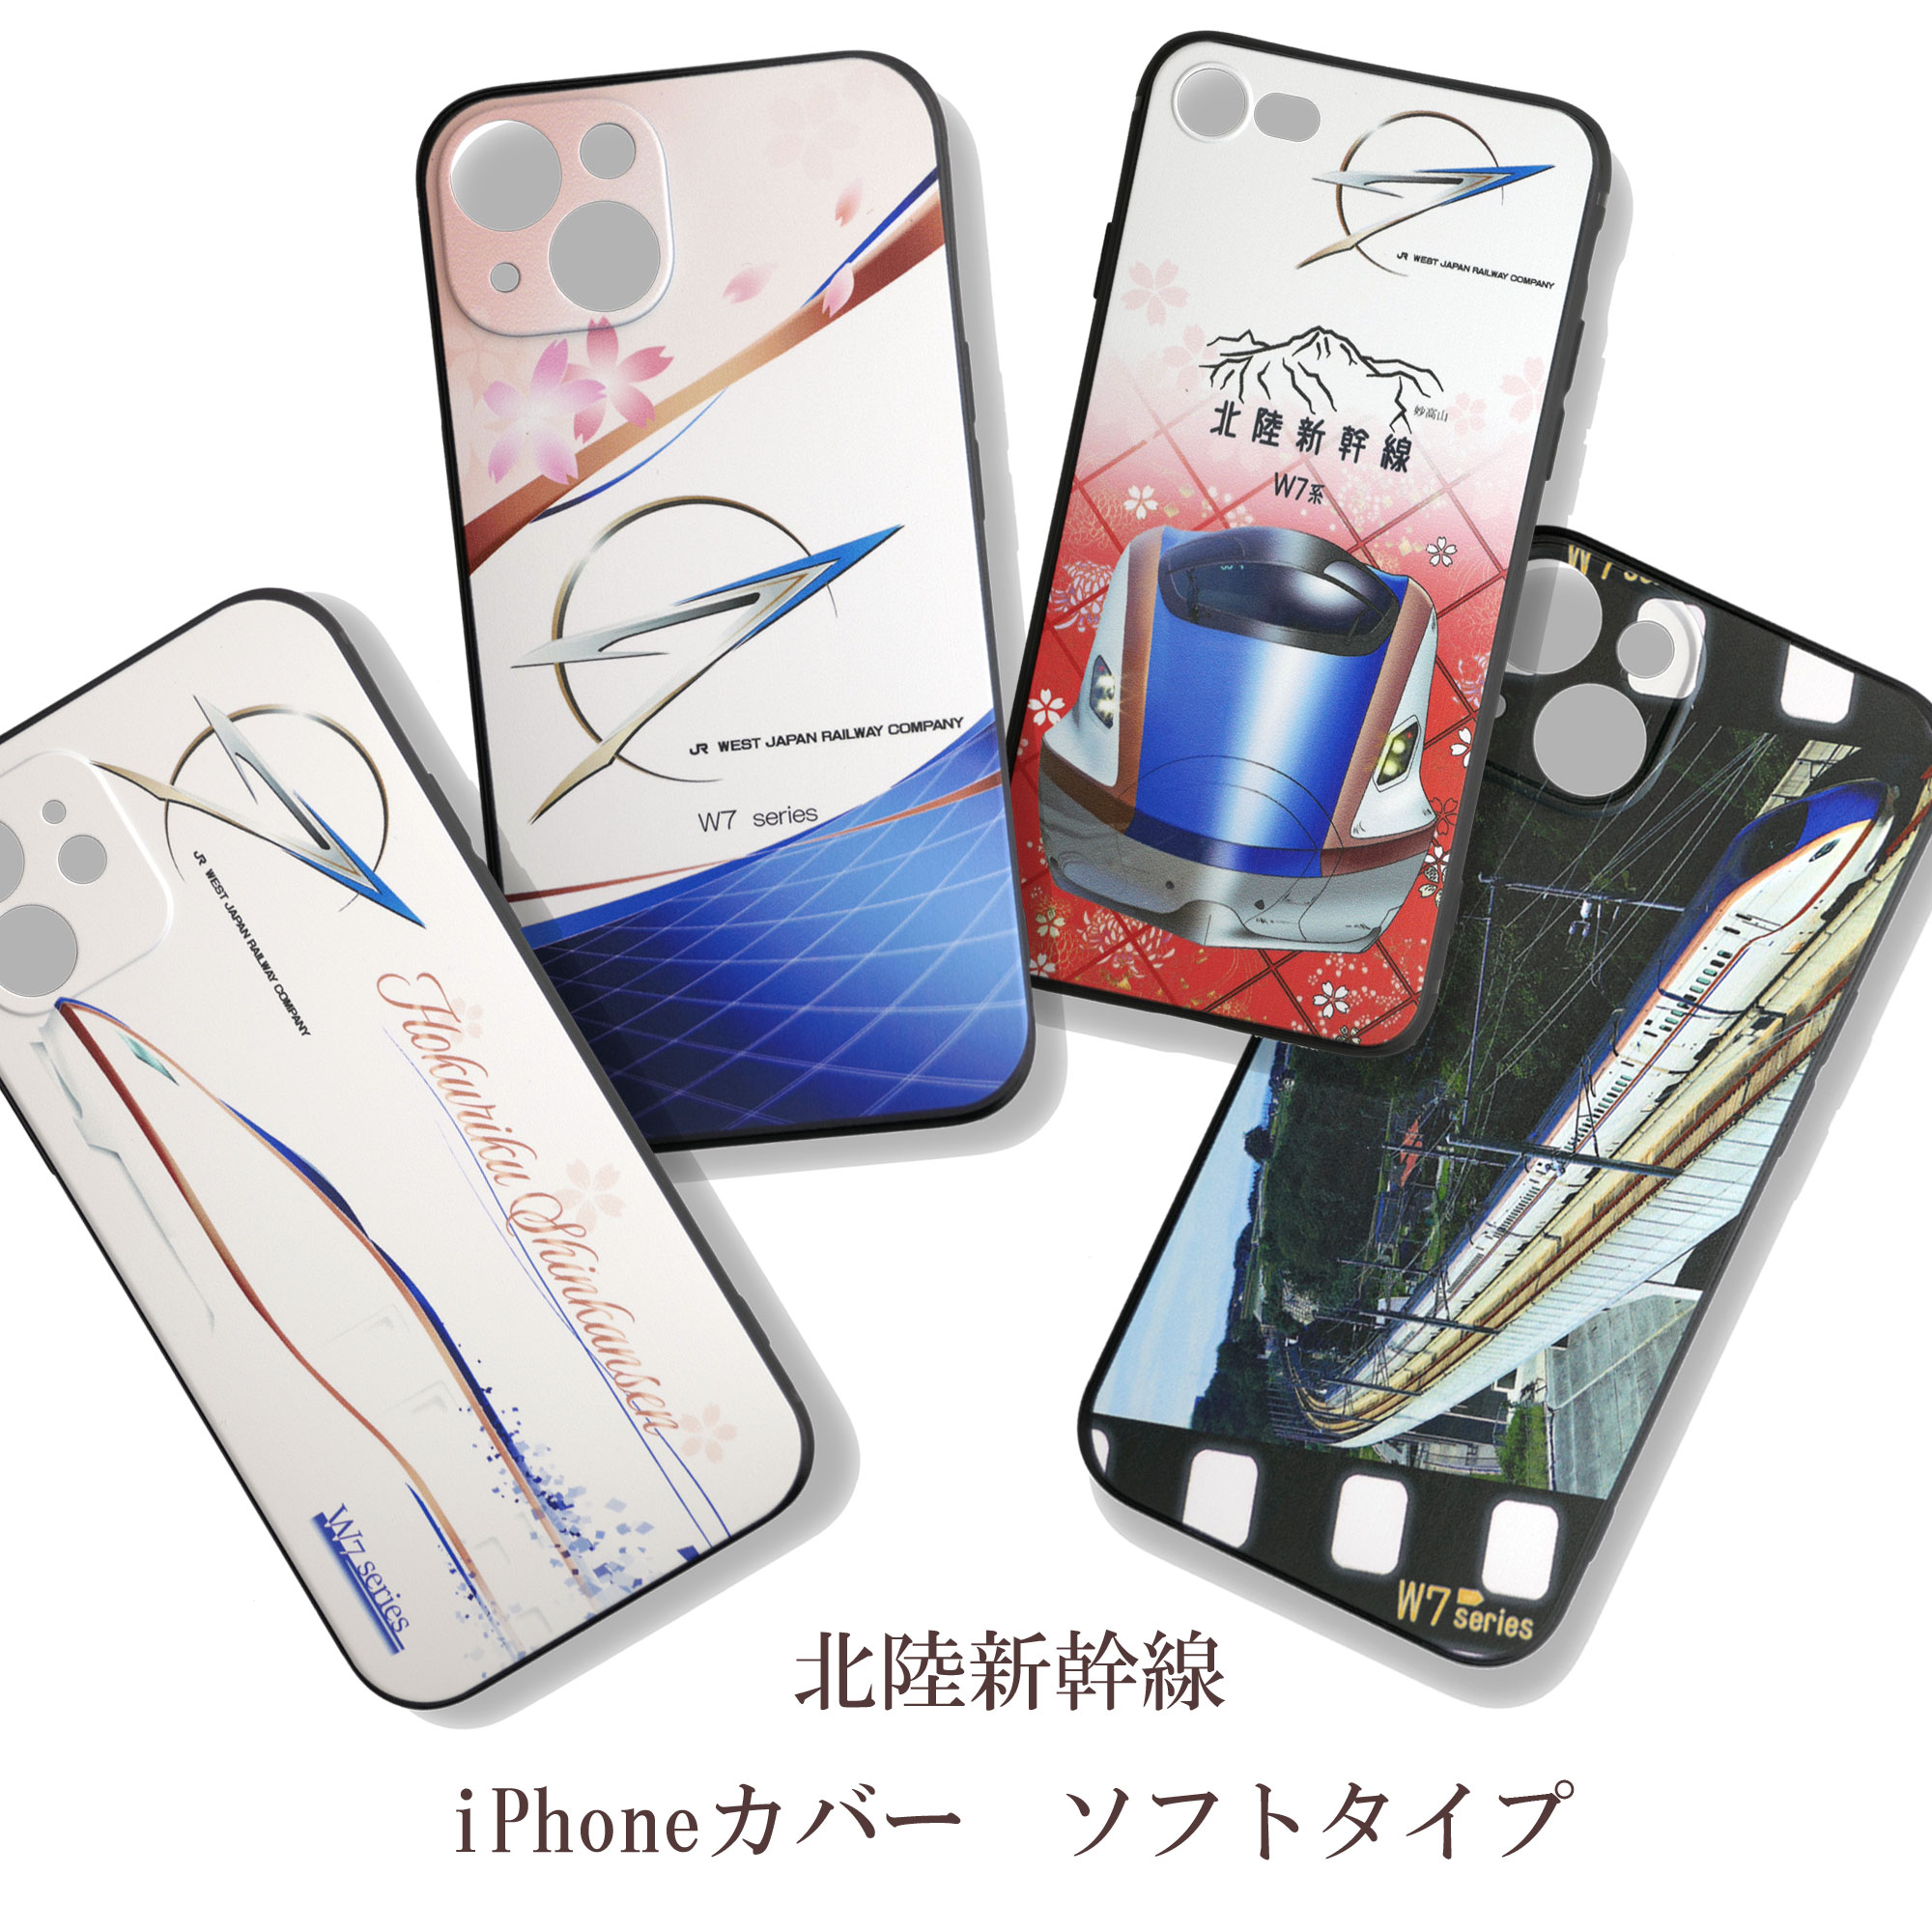 北陸新幹線D iPhoneカバー・ソフトタイプ